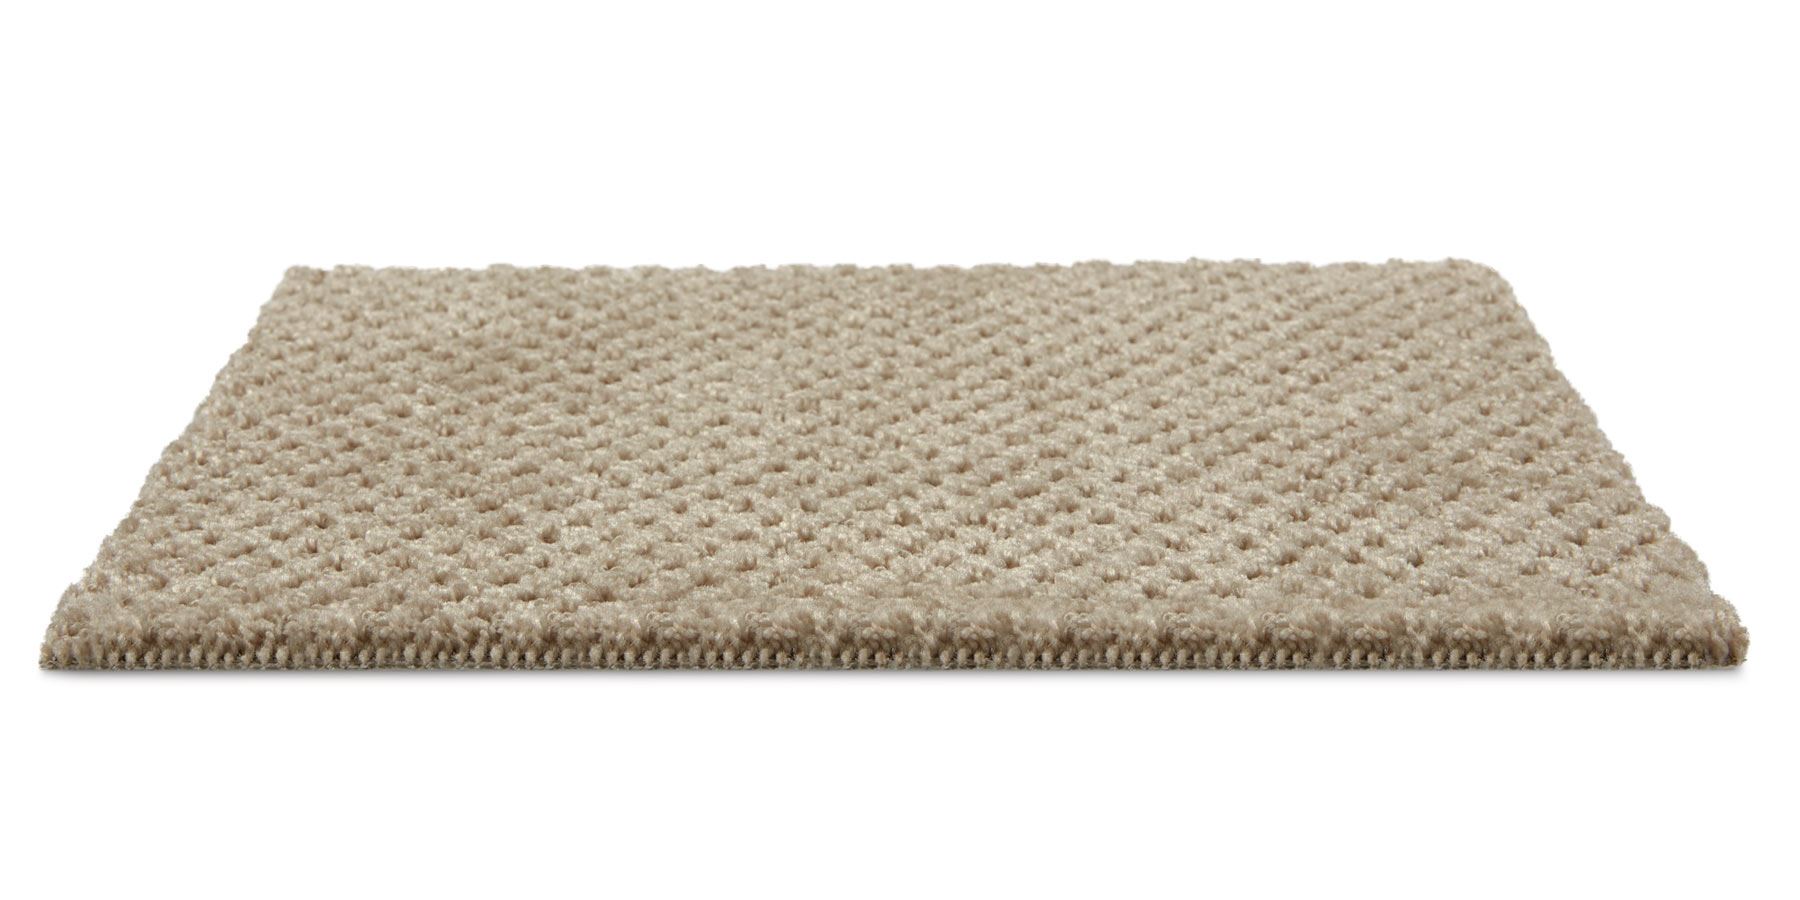 Polaris Pattern Carpet